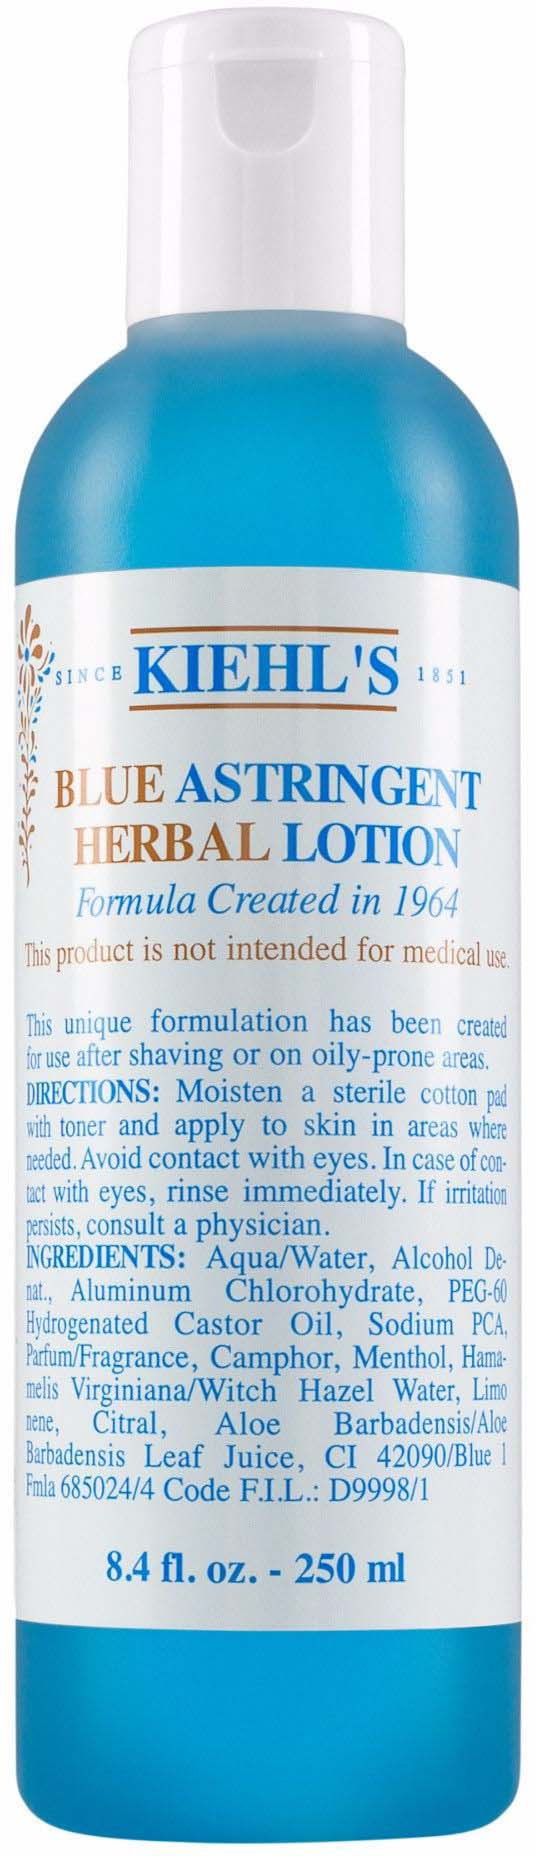 Blue Astringent Herbal Lotion - Tonik zwężający pory